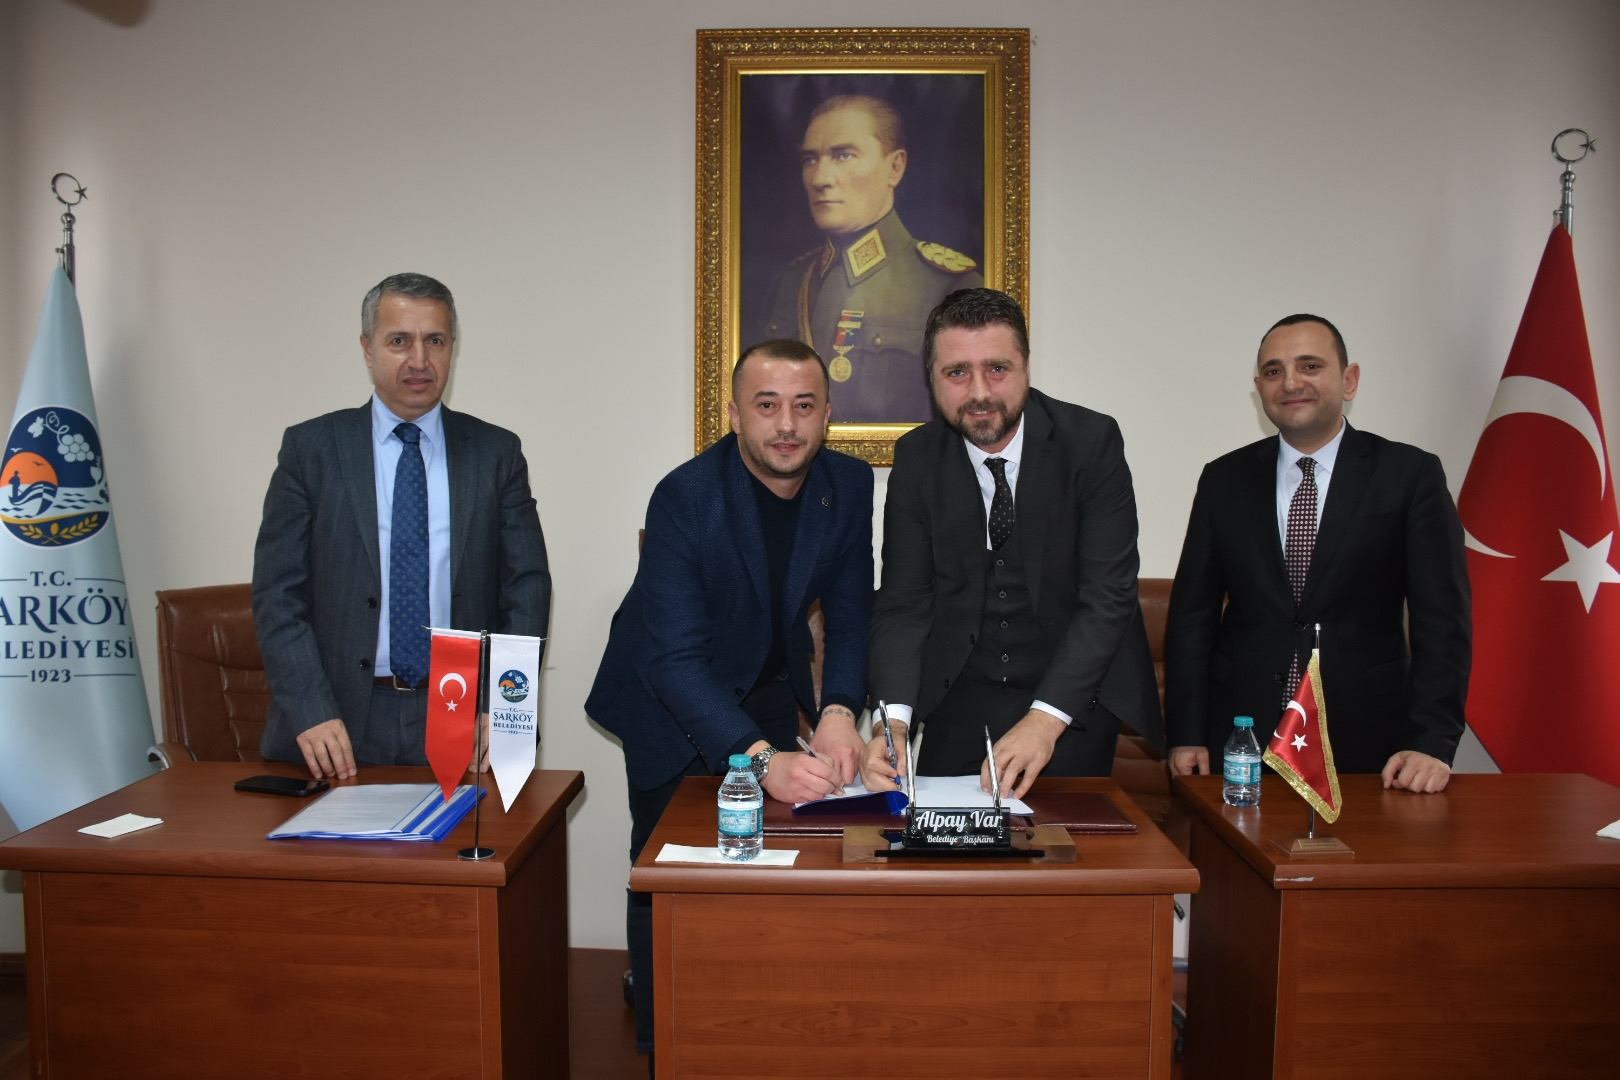 Şarköy Belediyesi toplu iş sözleşmesi imzalandı